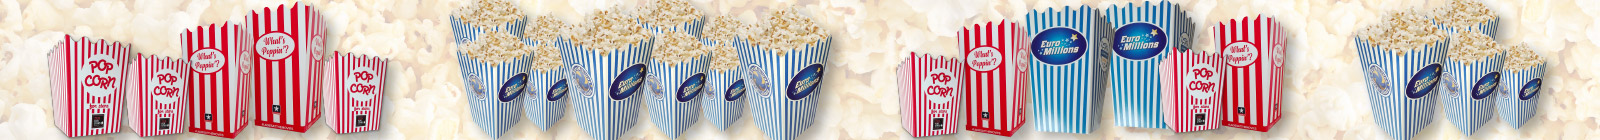 Popcornbakjes laten bedrukken met logo of bedrukte popcorndoosjes met eigen ontwerp